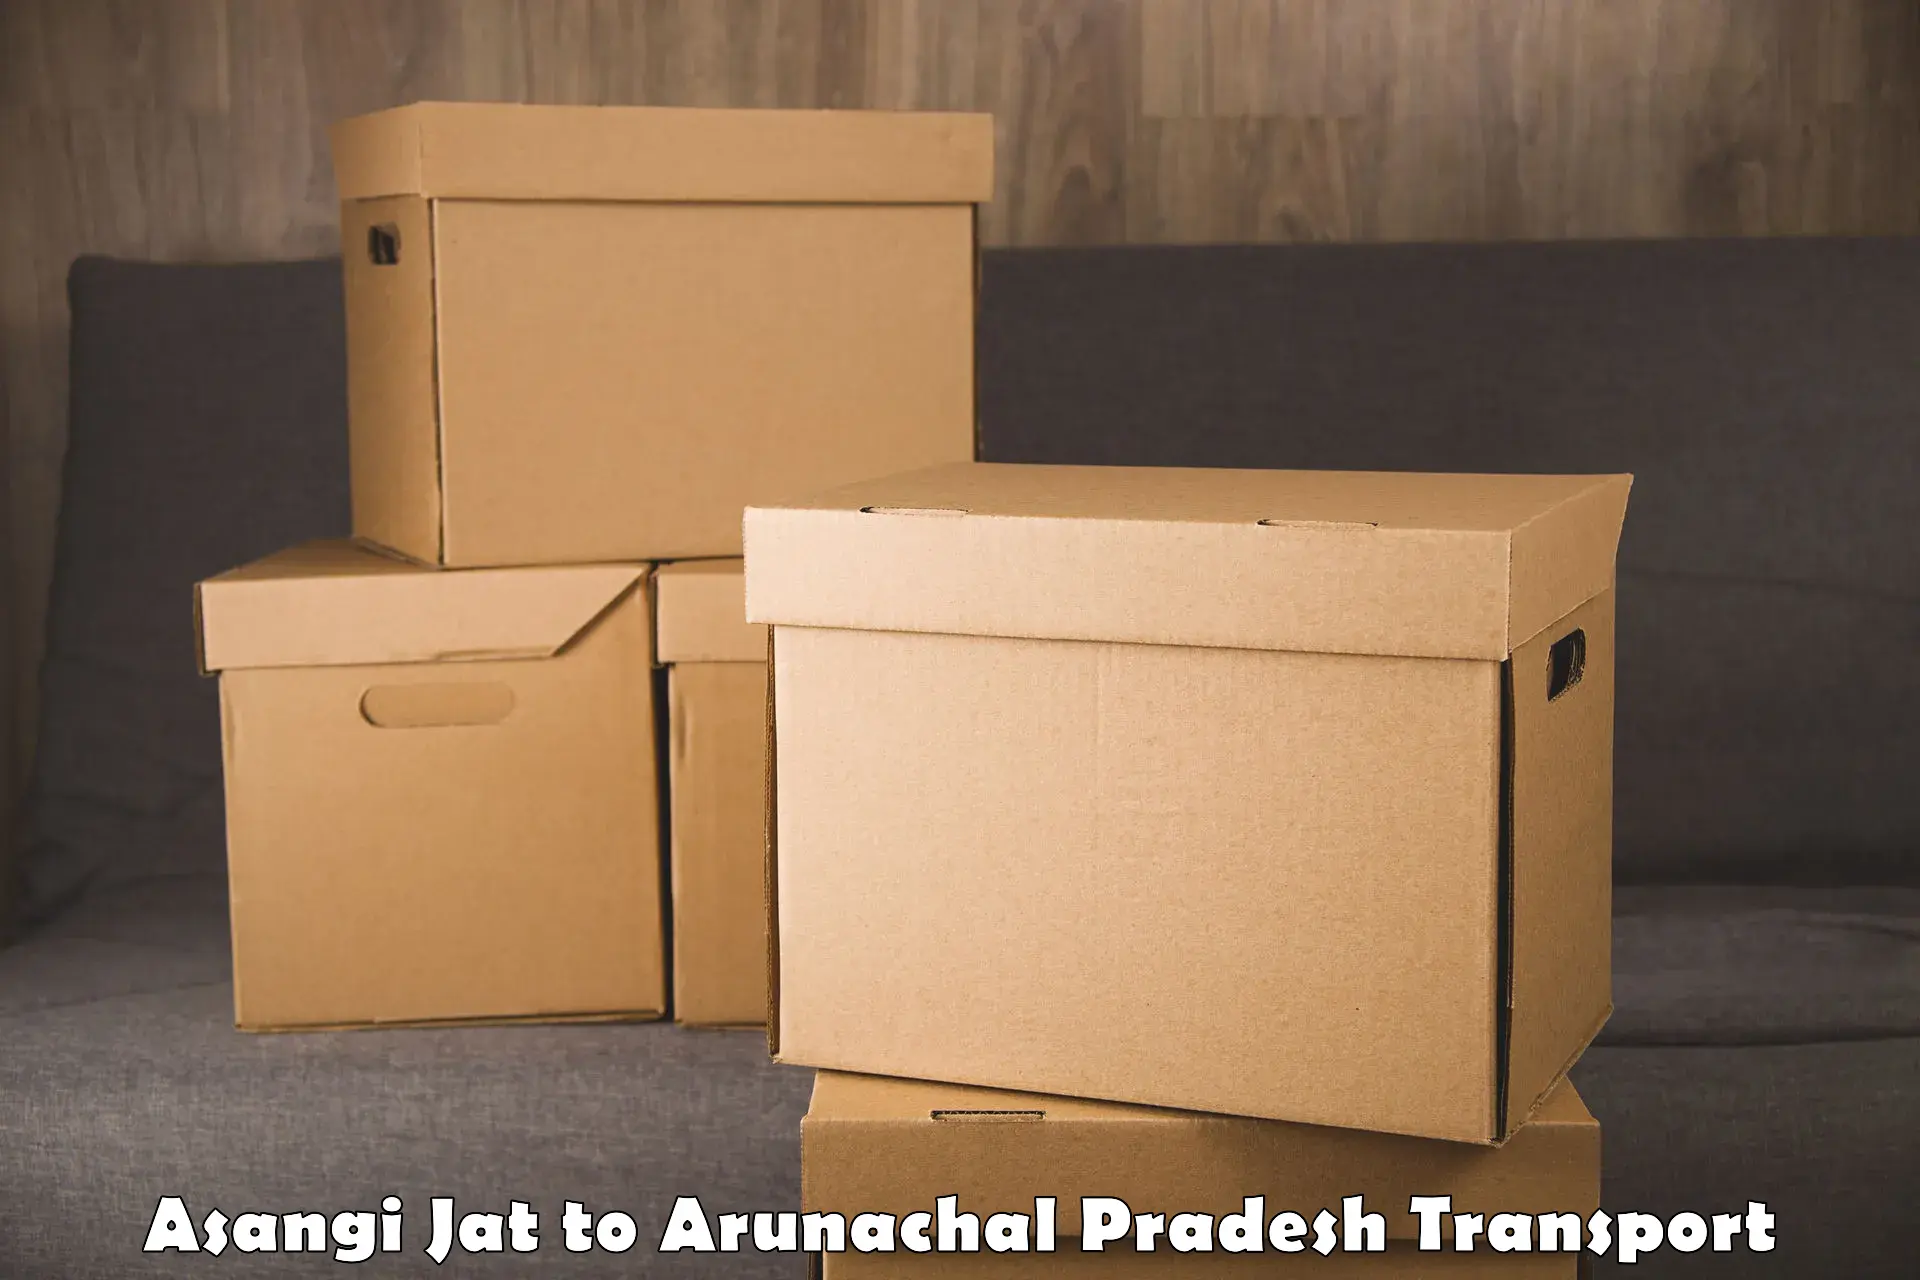 Parcel transport services Asangi Jat to Namsai